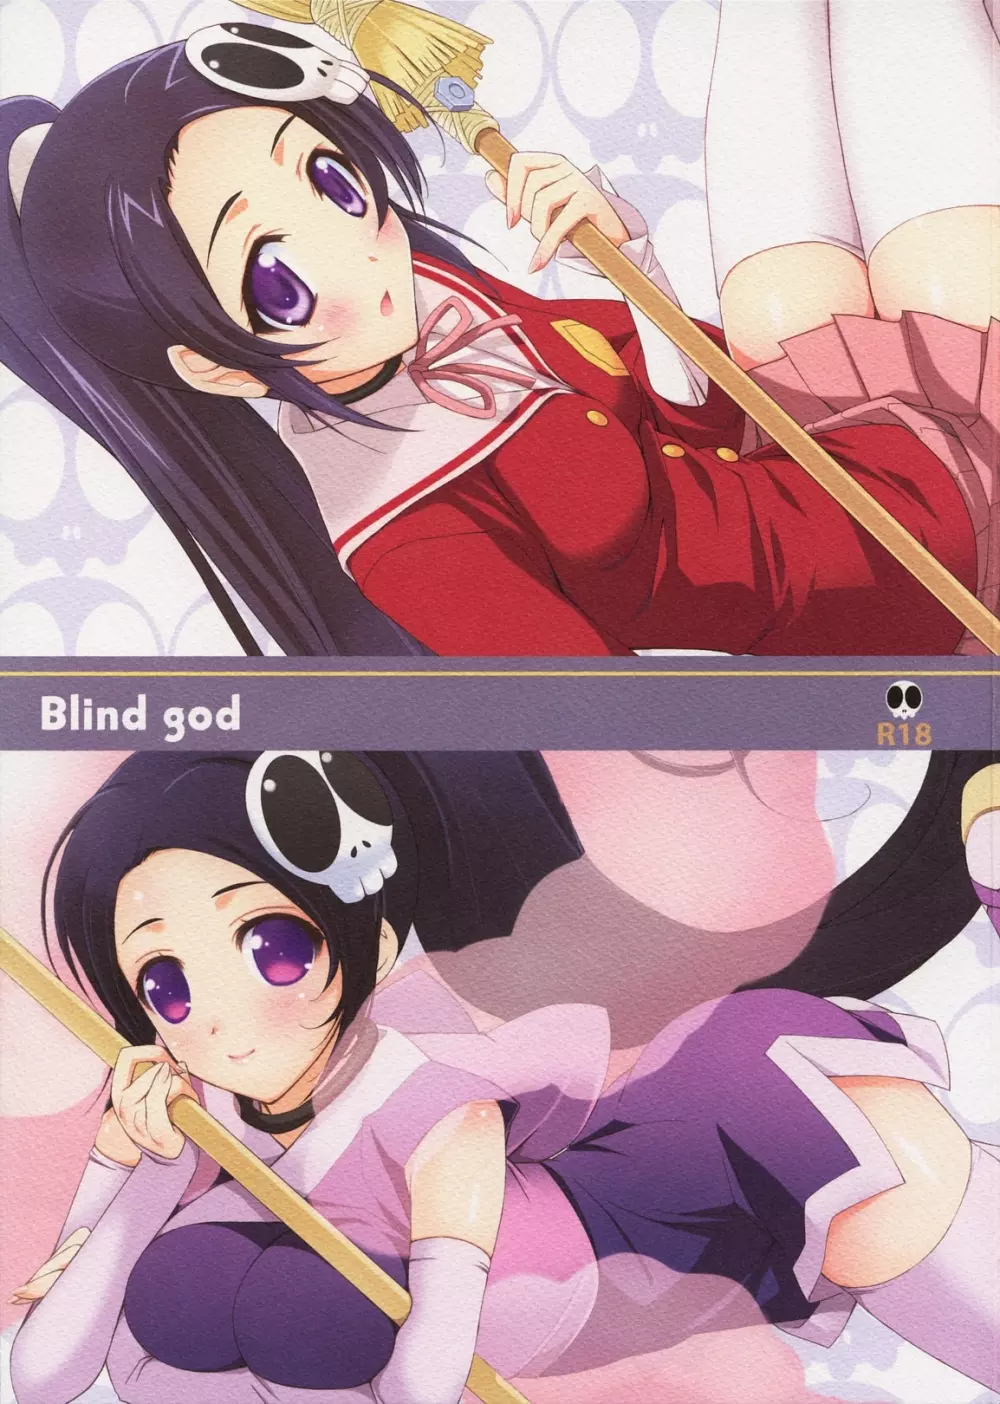 Blind god